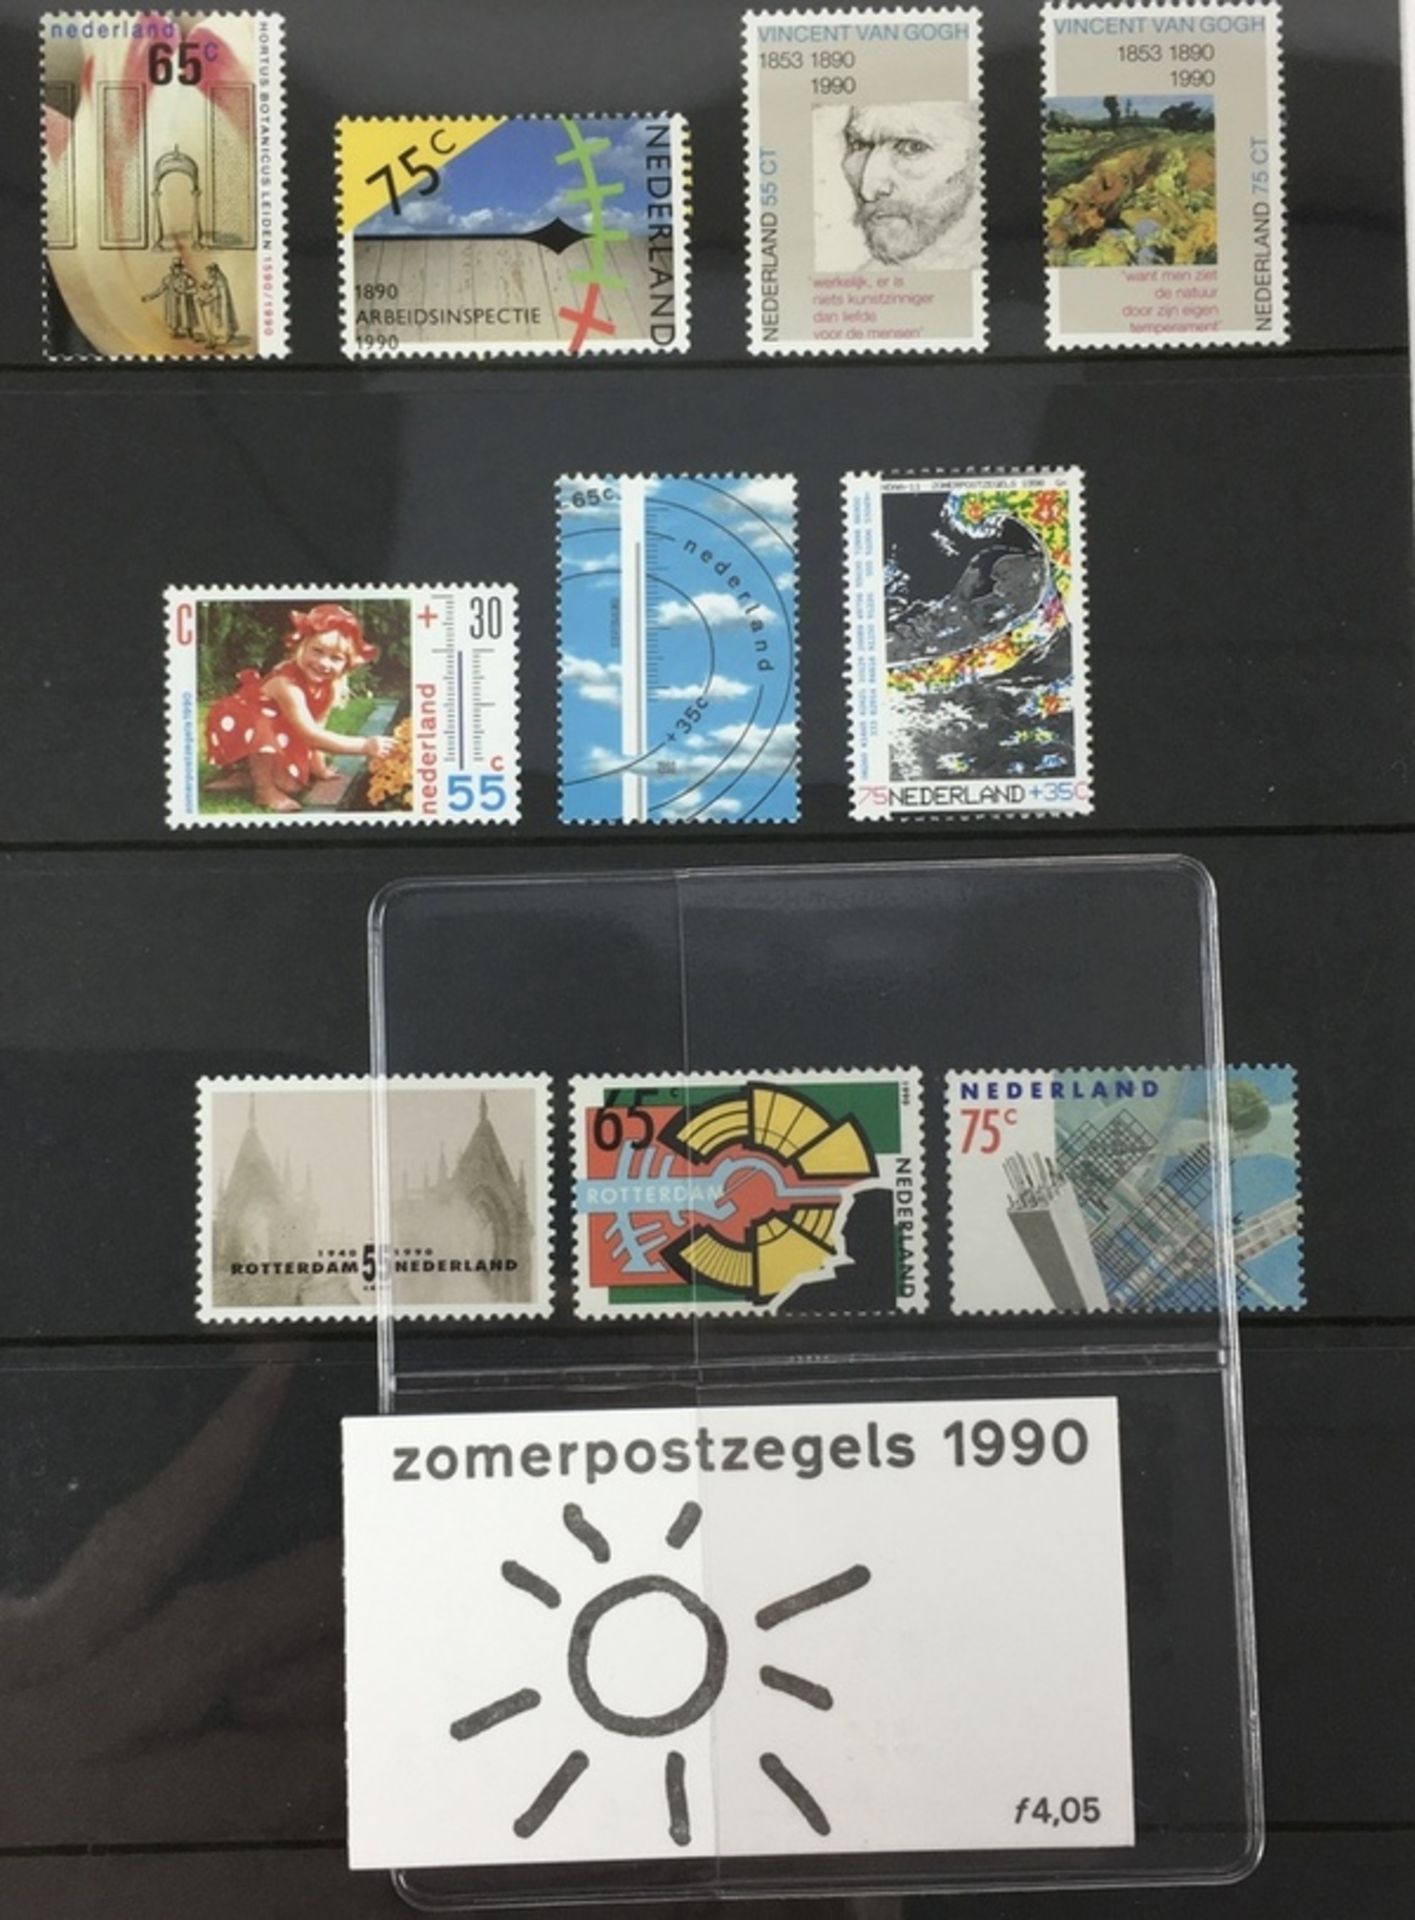 (Filatelie) Jaarcollecties postzegelsJaarcollecties postzegels uit 1998, 1992 (3x), 1991 (2x), - Image 2 of 4